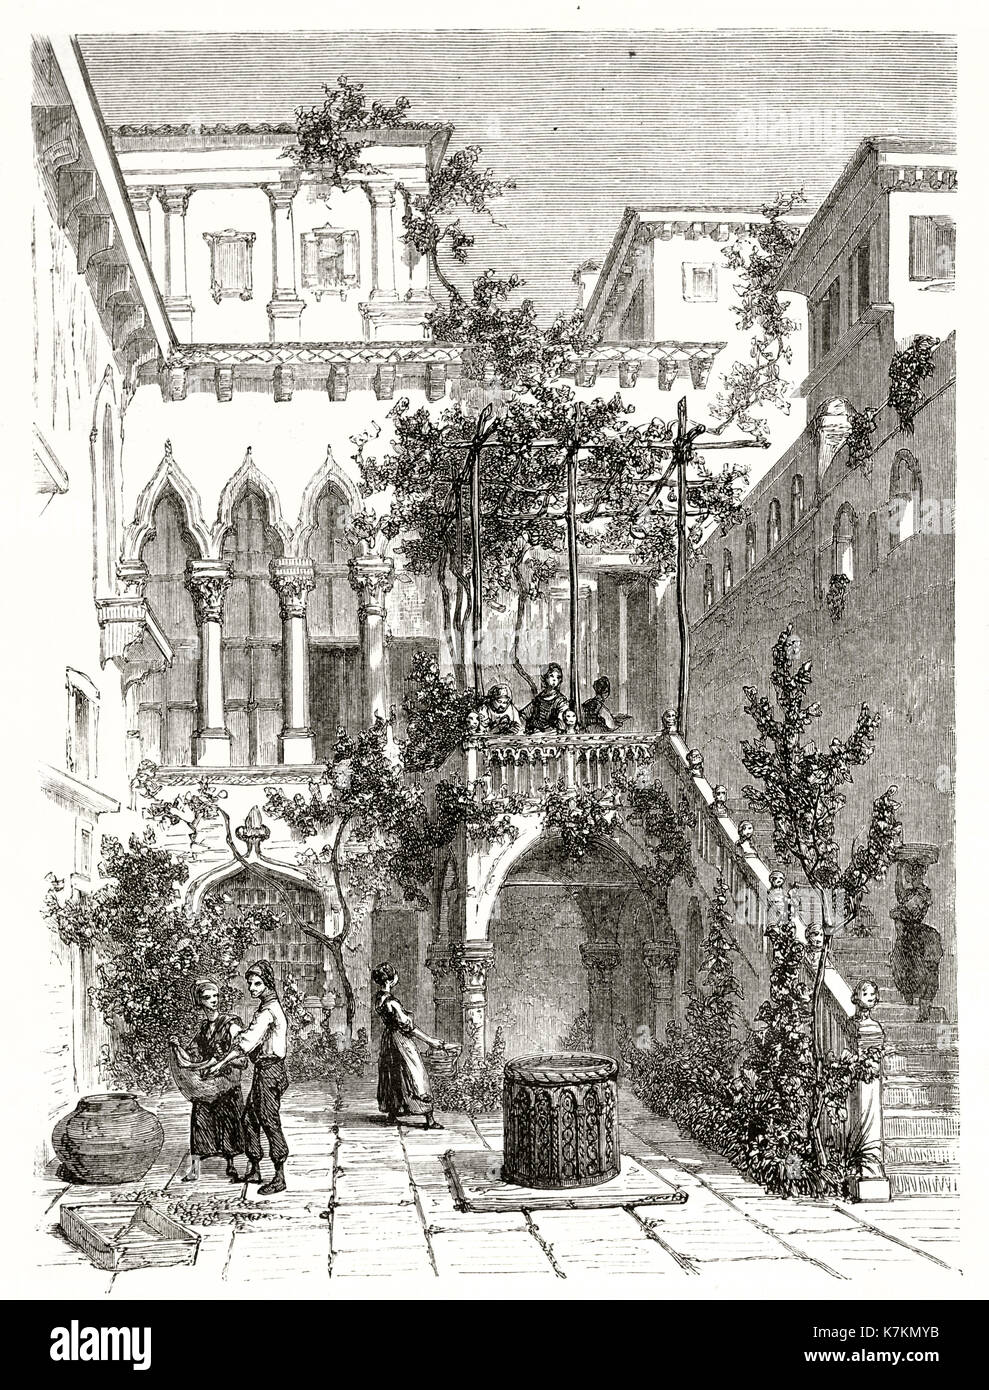 Ancienne vue sur la cour de Salviati Palace, Venice, Italie. Par Girardet après Beaumont, publ. sur le Tour du Monde, Paris, 1862 Banque D'Images